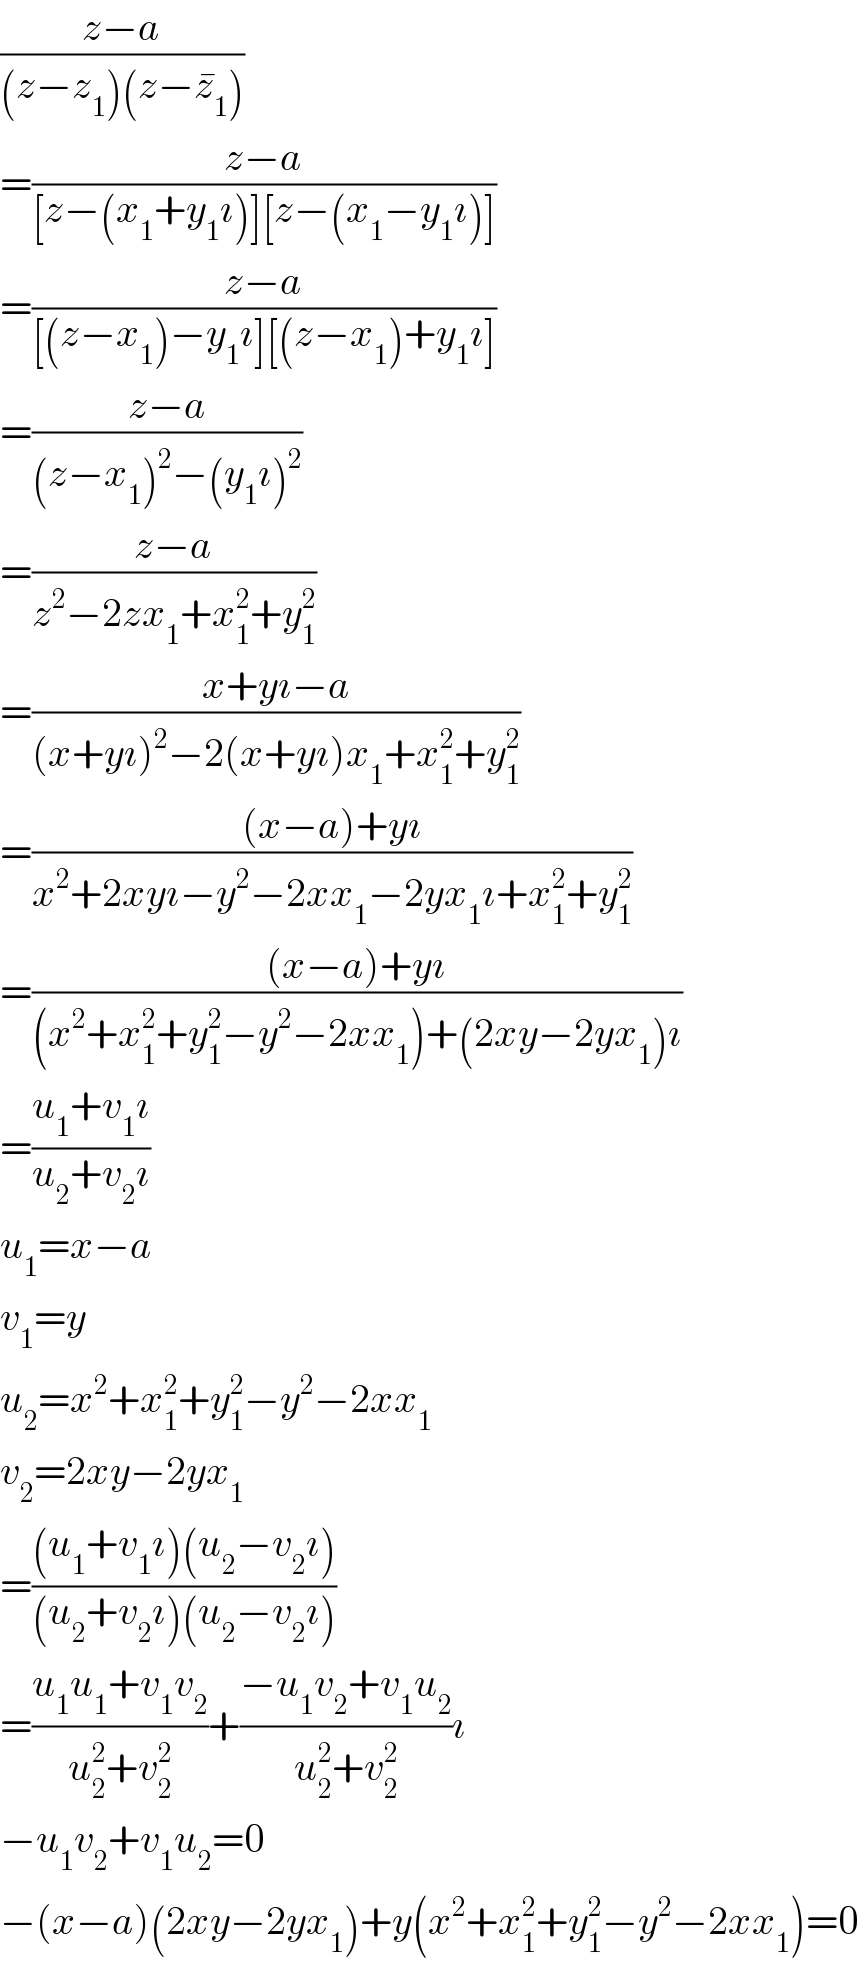 ((z−a)/((z−z_1 )(z−z_1 ^� )))  =((z−a)/([z−(x_1 +y_1 ı)][z−(x_1 −y_1 ı)]))  =((z−a)/([(z−x_1 )−y_1 ı][(z−x_1 )+y_1 ı]))  =((z−a)/((z−x_1 )^2 −(y_1 ı)^2 ))  =((z−a)/(z^2 −2zx_1 +x_1 ^2 +y_1 ^2 ))  =((x+yı−a)/((x+yı)^2 −2(x+yı)x_1 +x_1 ^2 +y_1 ^2 ))  =(((x−a)+yı)/(x^2 +2xyı−y^2 −2xx_1 −2yx_1 ı+x_1 ^2 +y_1 ^2 ))  =(((x−a)+yı)/((x^2 +x_1 ^2 +y_1 ^2 −y^2 −2xx_1 )+(2xy−2yx_1 )ı))  =((u_1 +v_1 ı)/(u_2 +v_2 ı))  u_1 =x−a  v_1 =y  u_2 =x^2 +x_1 ^2 +y_1 ^2 −y^2 −2xx_1   v_2 =2xy−2yx_1   =(((u_1 +v_1 ı)(u_2 −v_2 ı))/((u_2 +v_2 ı)(u_2 −v_2 ı)))  =((u_1 u_1 +v_1 v_2 )/(u_2 ^2 +v_2 ^2 ))+((−u_1 v_2 +v_1 u_2 )/(u_2 ^2 +v_2 ^2 ))ı  −u_1 v_2 +v_1 u_2 =0  −(x−a)(2xy−2yx_1 )+y(x^2 +x_1 ^2 +y_1 ^2 −y^2 −2xx_1 )=0  